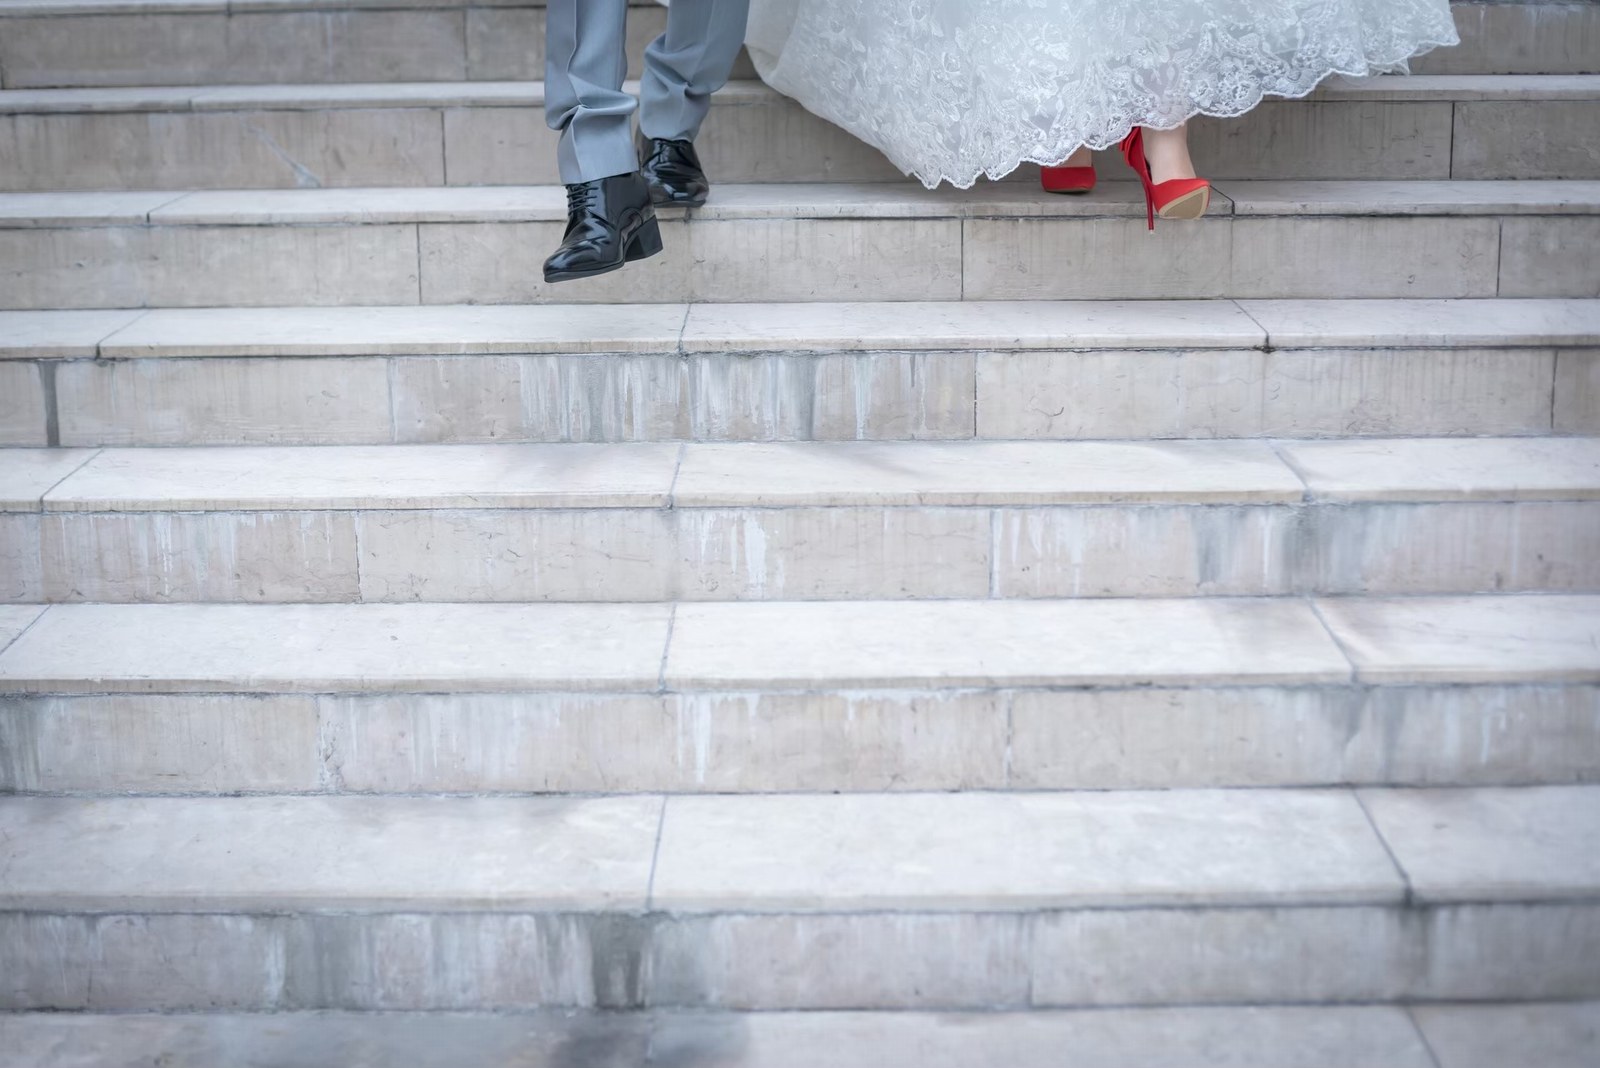 香川県の結婚式場シェルエメール＆アイスタイルの大階段